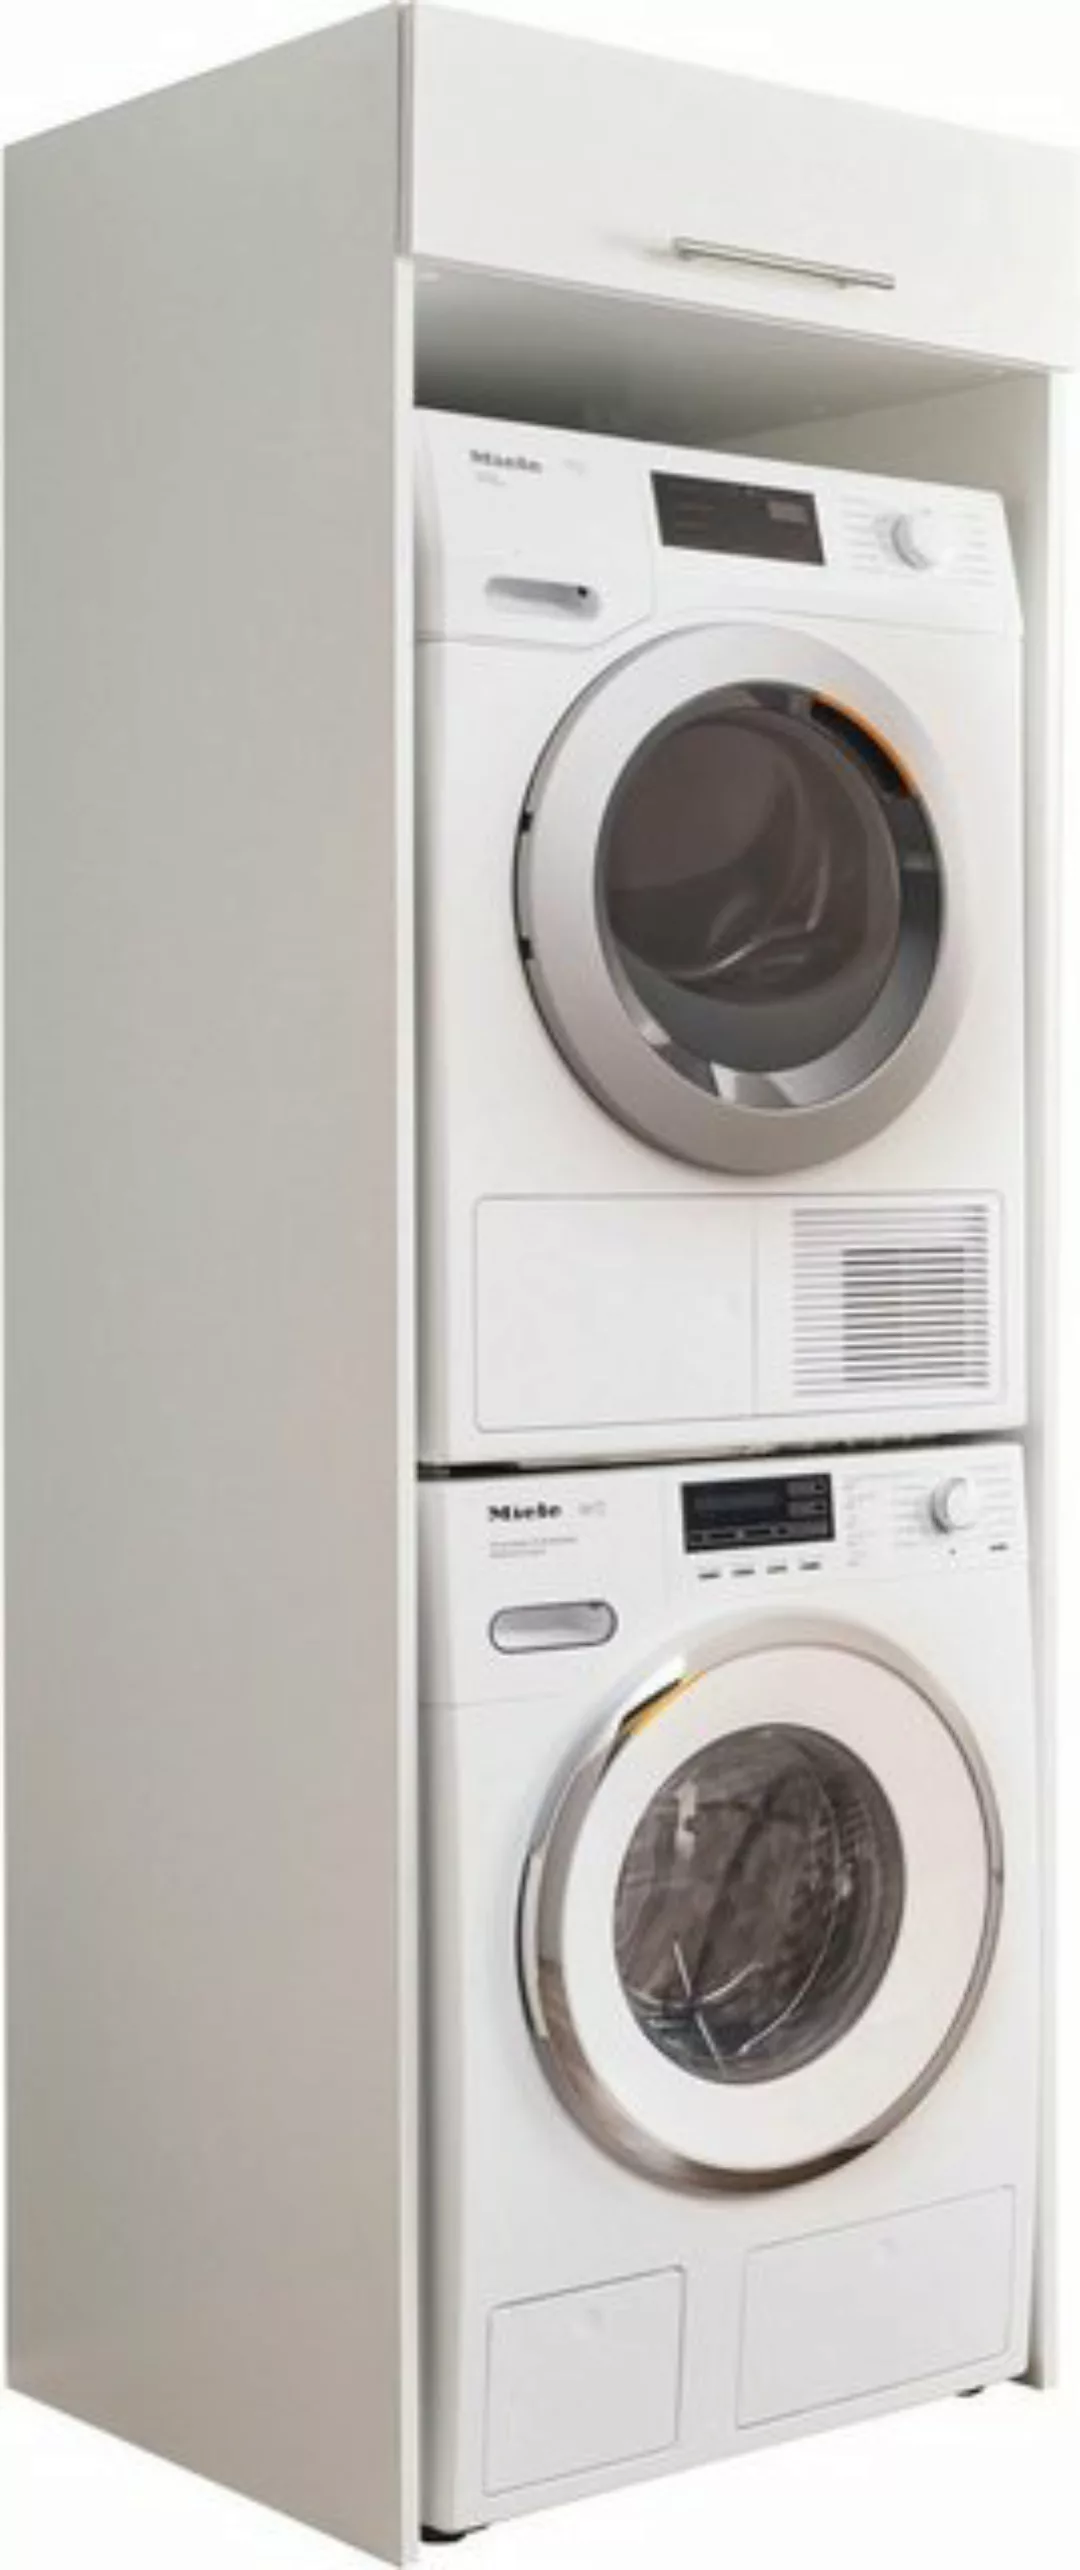 freiraum Waschmaschinenumbauschrank LAUNDREEZY in wei - 67,5x200x67,5 (BxHx günstig online kaufen